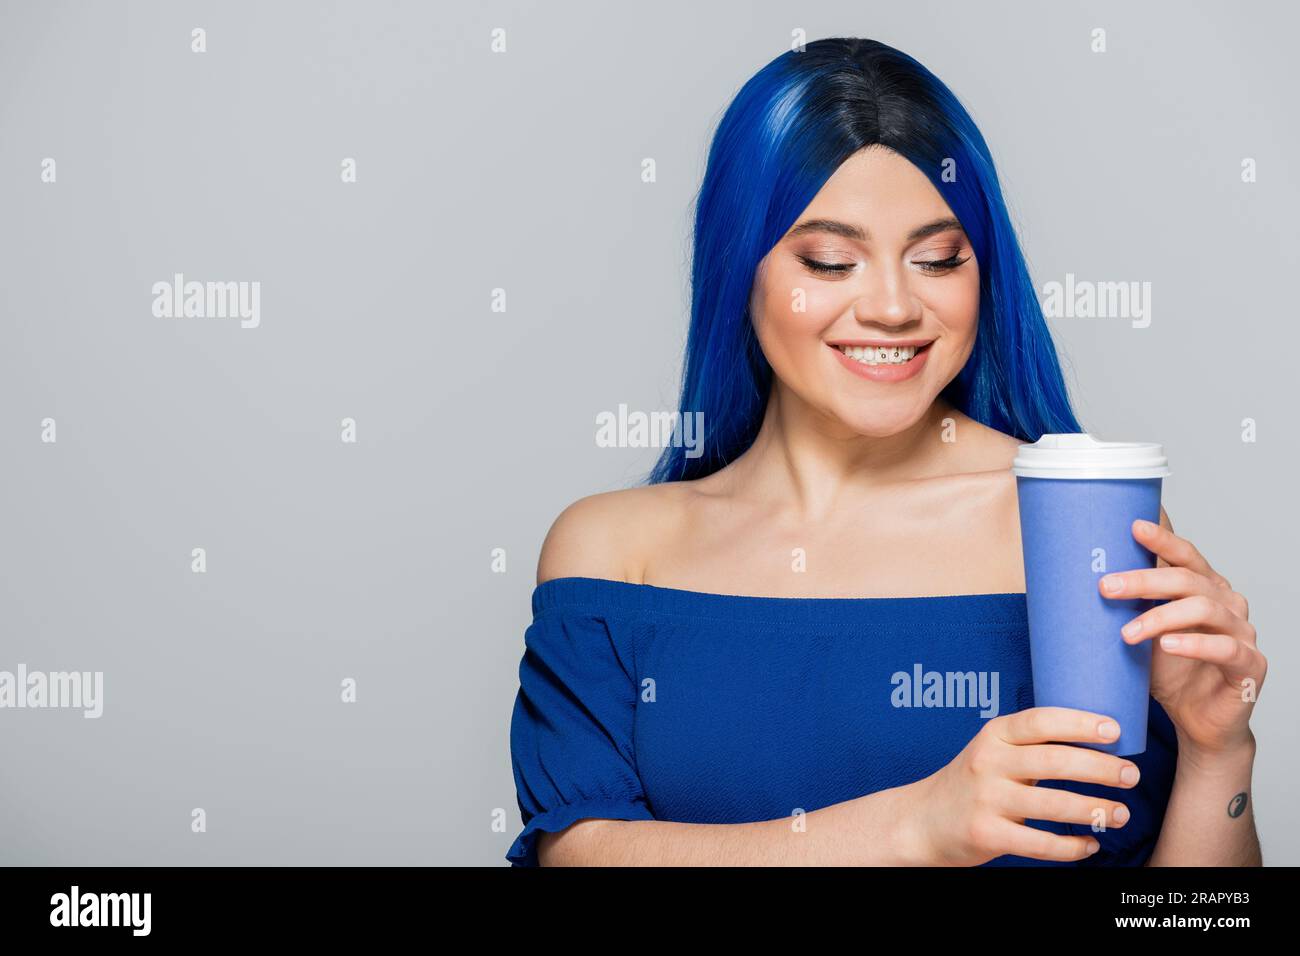 Pappbecher, glückliche junge Frau mit blauen Haaren und Augen, die Kaffee auf grauem Hintergrund hält, Essen zum Mitnehmen, Koffein, Energie, Tattoo, Lebendige Farben Stockfoto